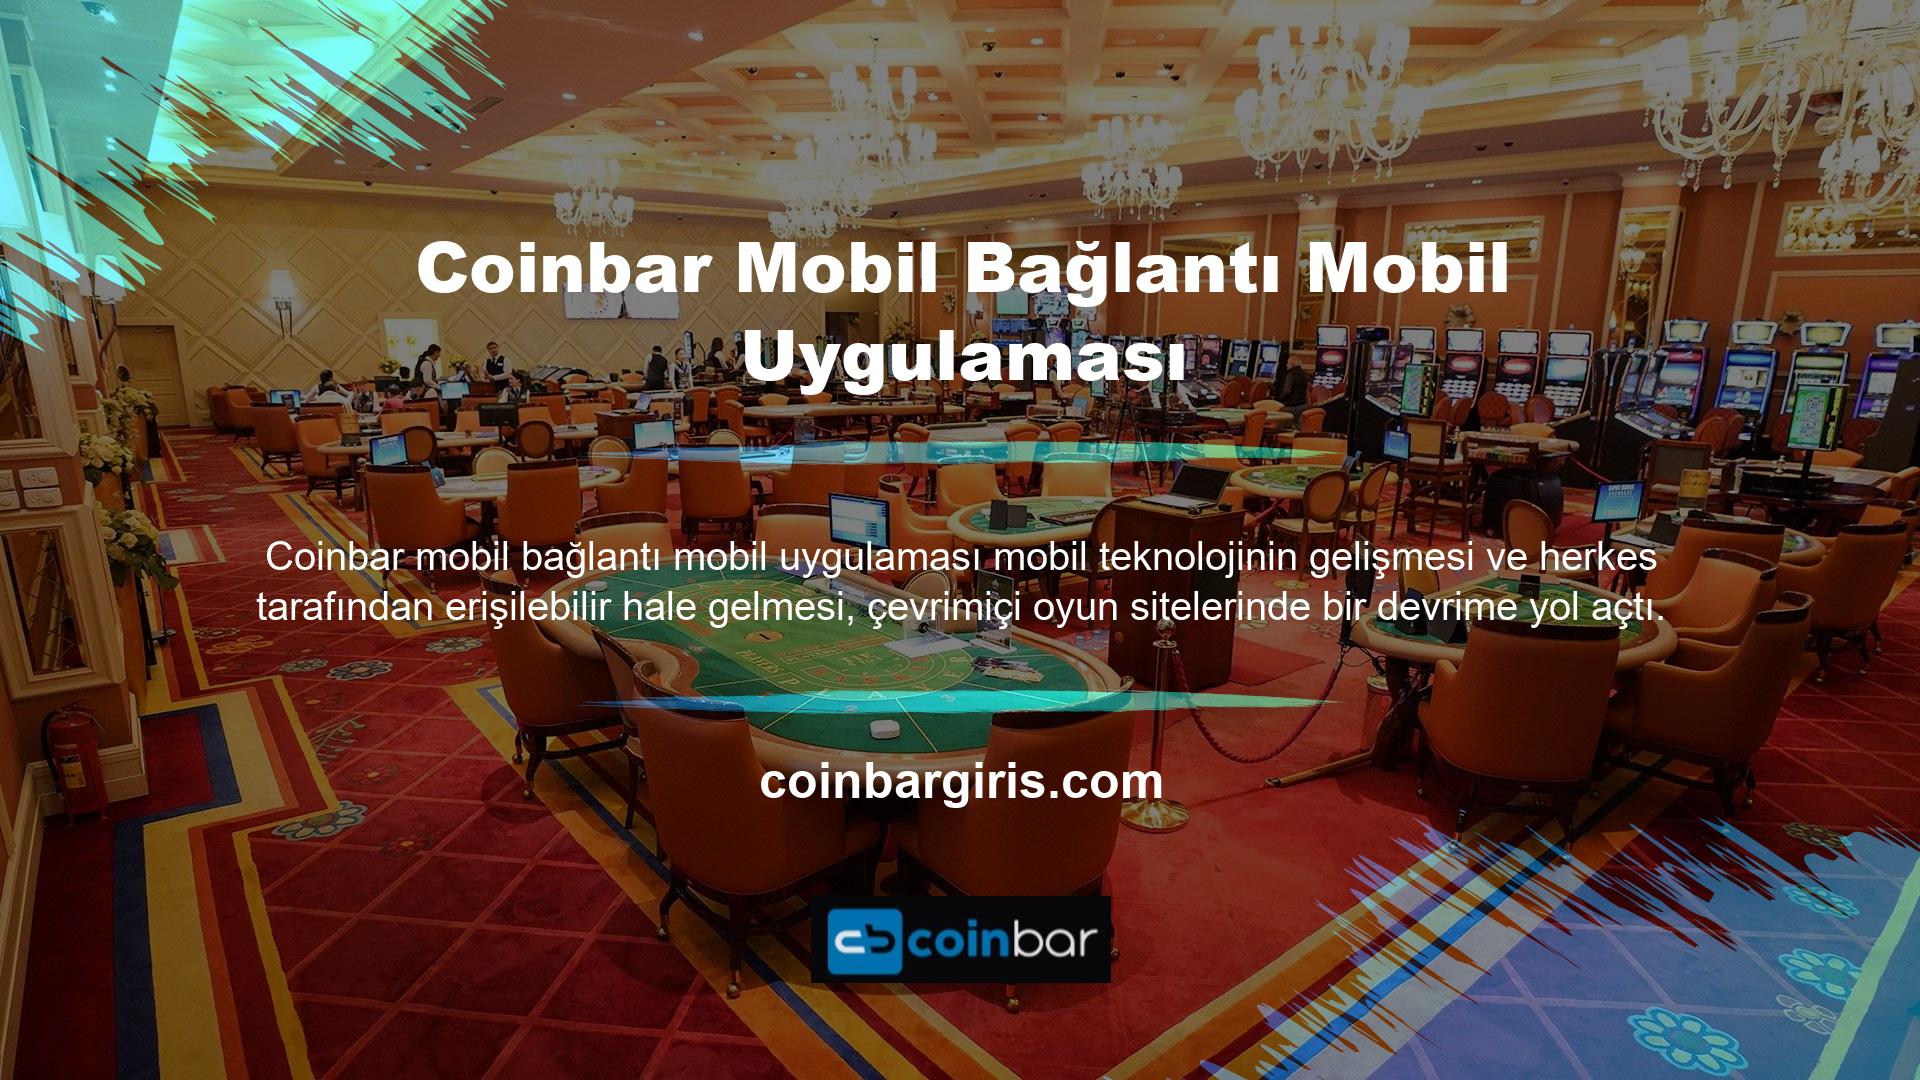 Yenilikçi sistemi sayesinde tüm kullanıcılar Coinbar mobil bağlantılı uygulama web sitesine mobil cihazlarından erişebilmektedir